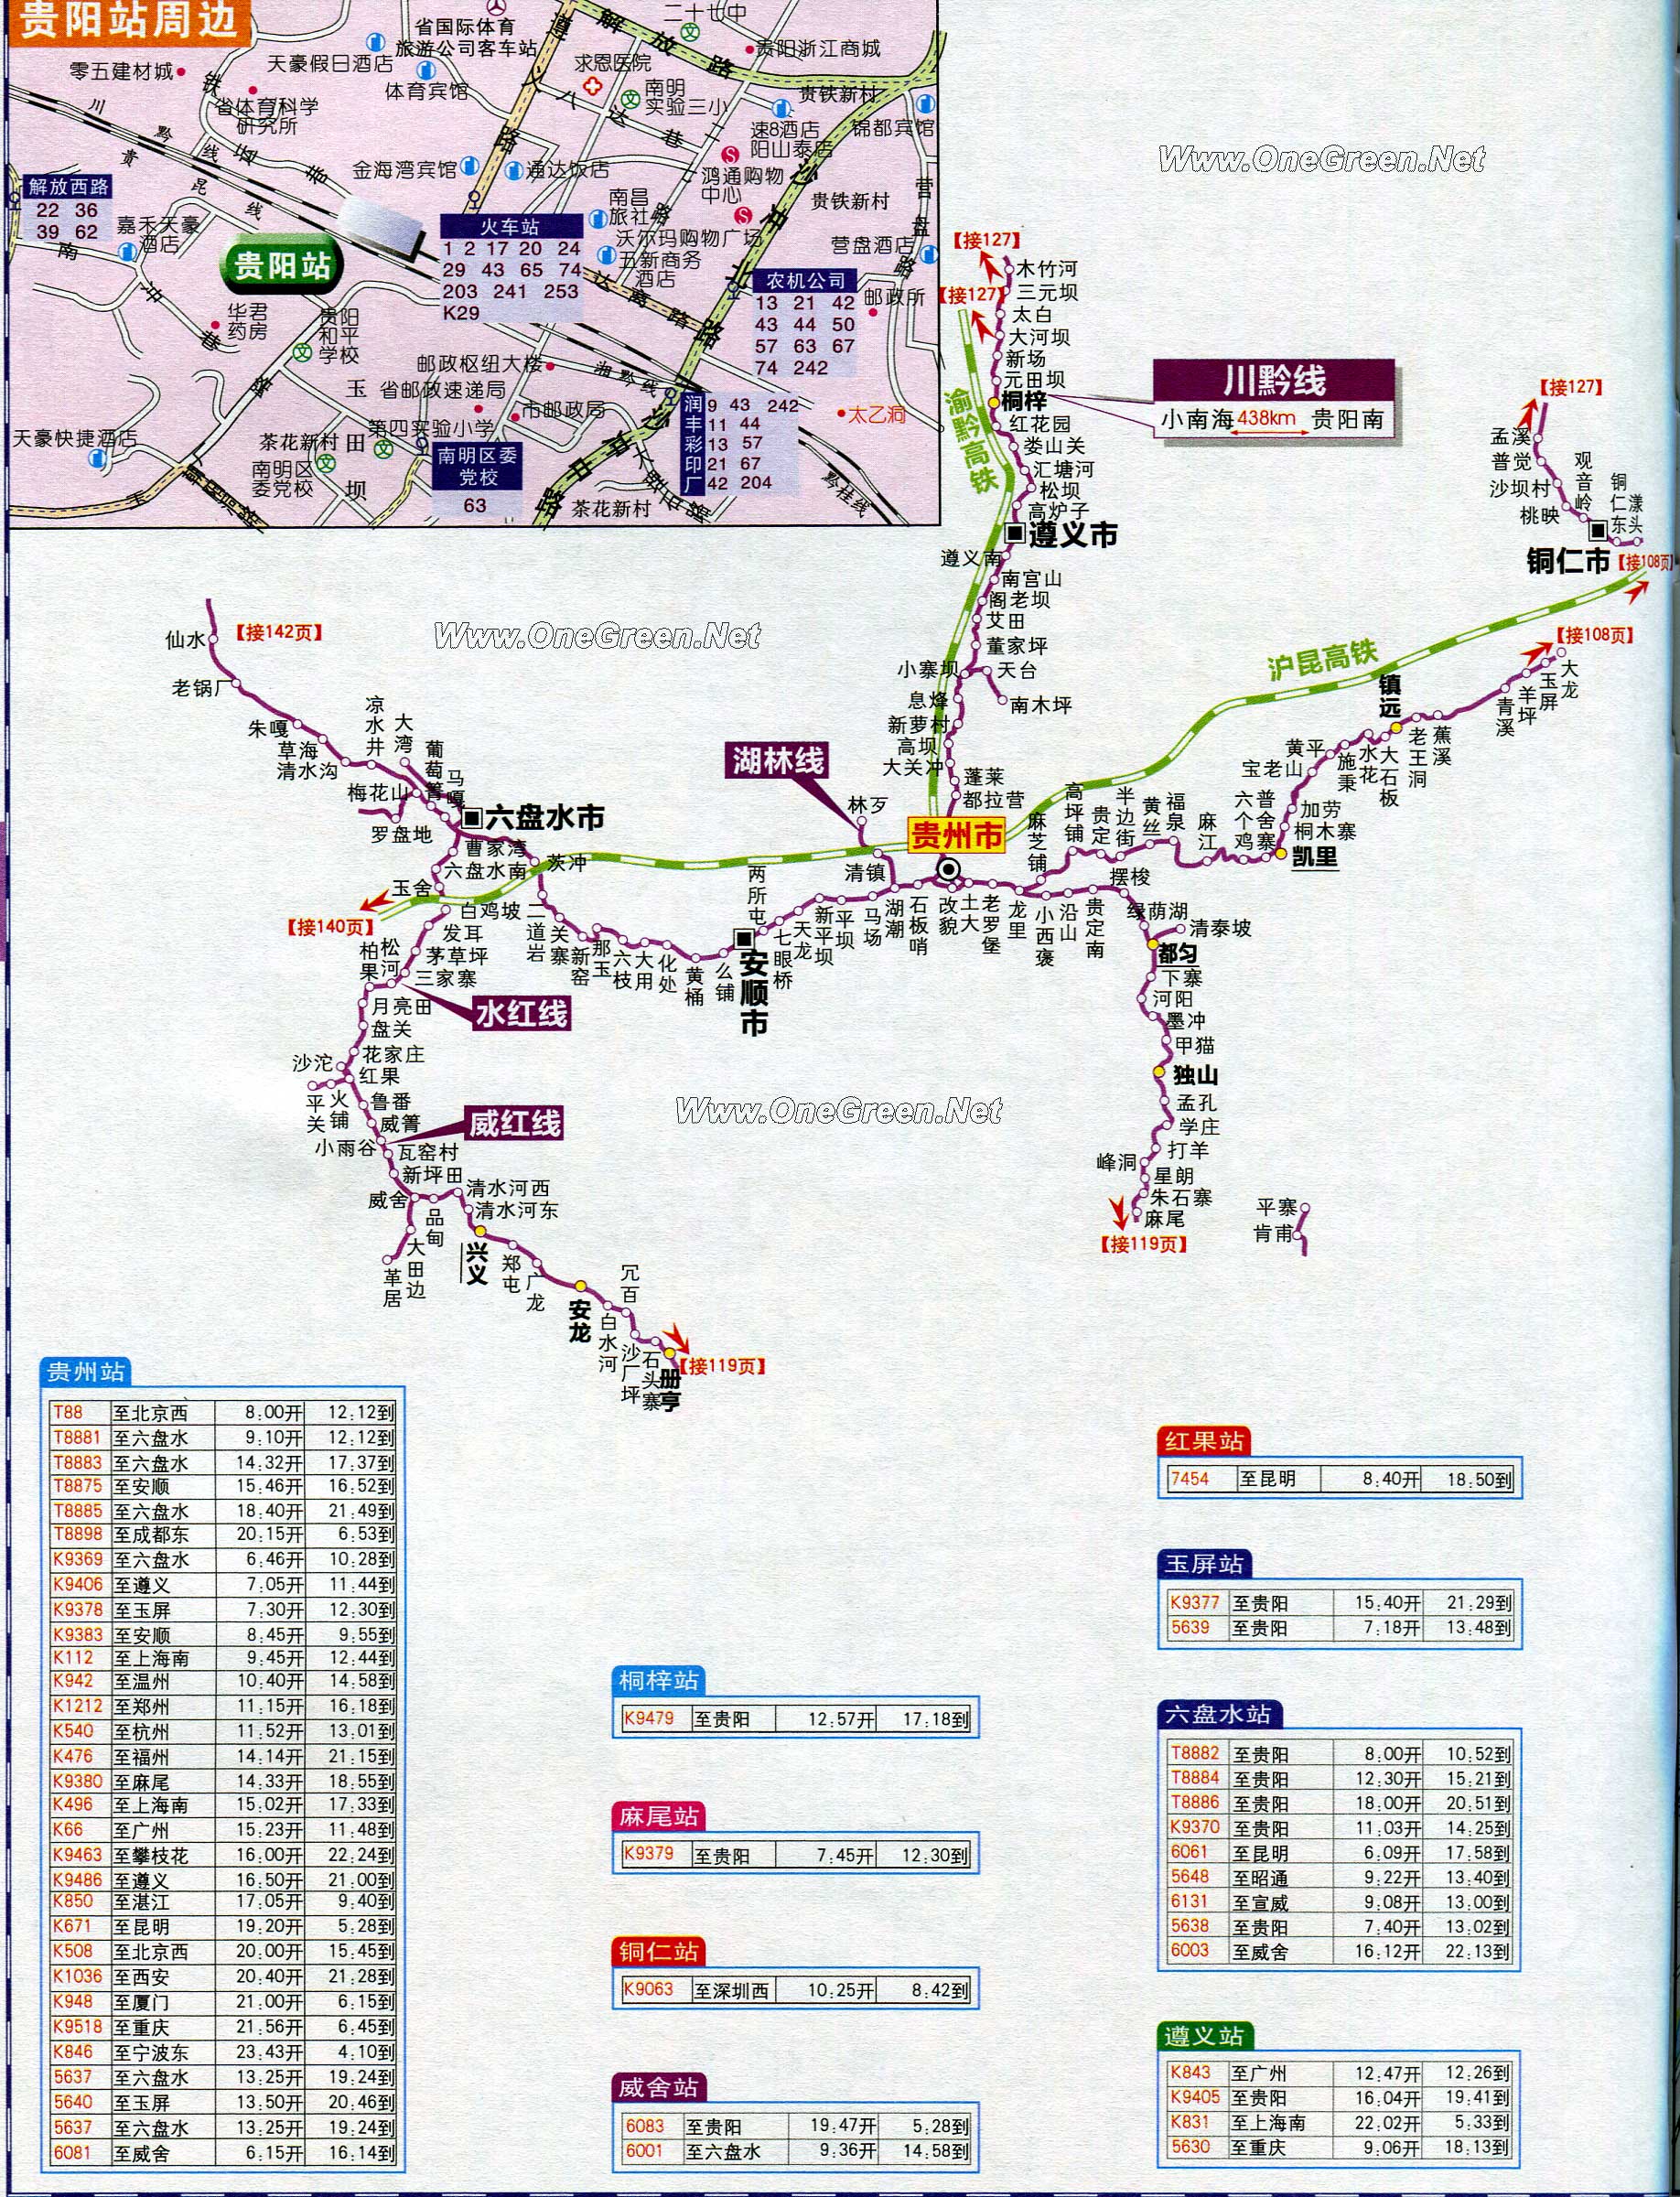 贵州省铁路交通地图